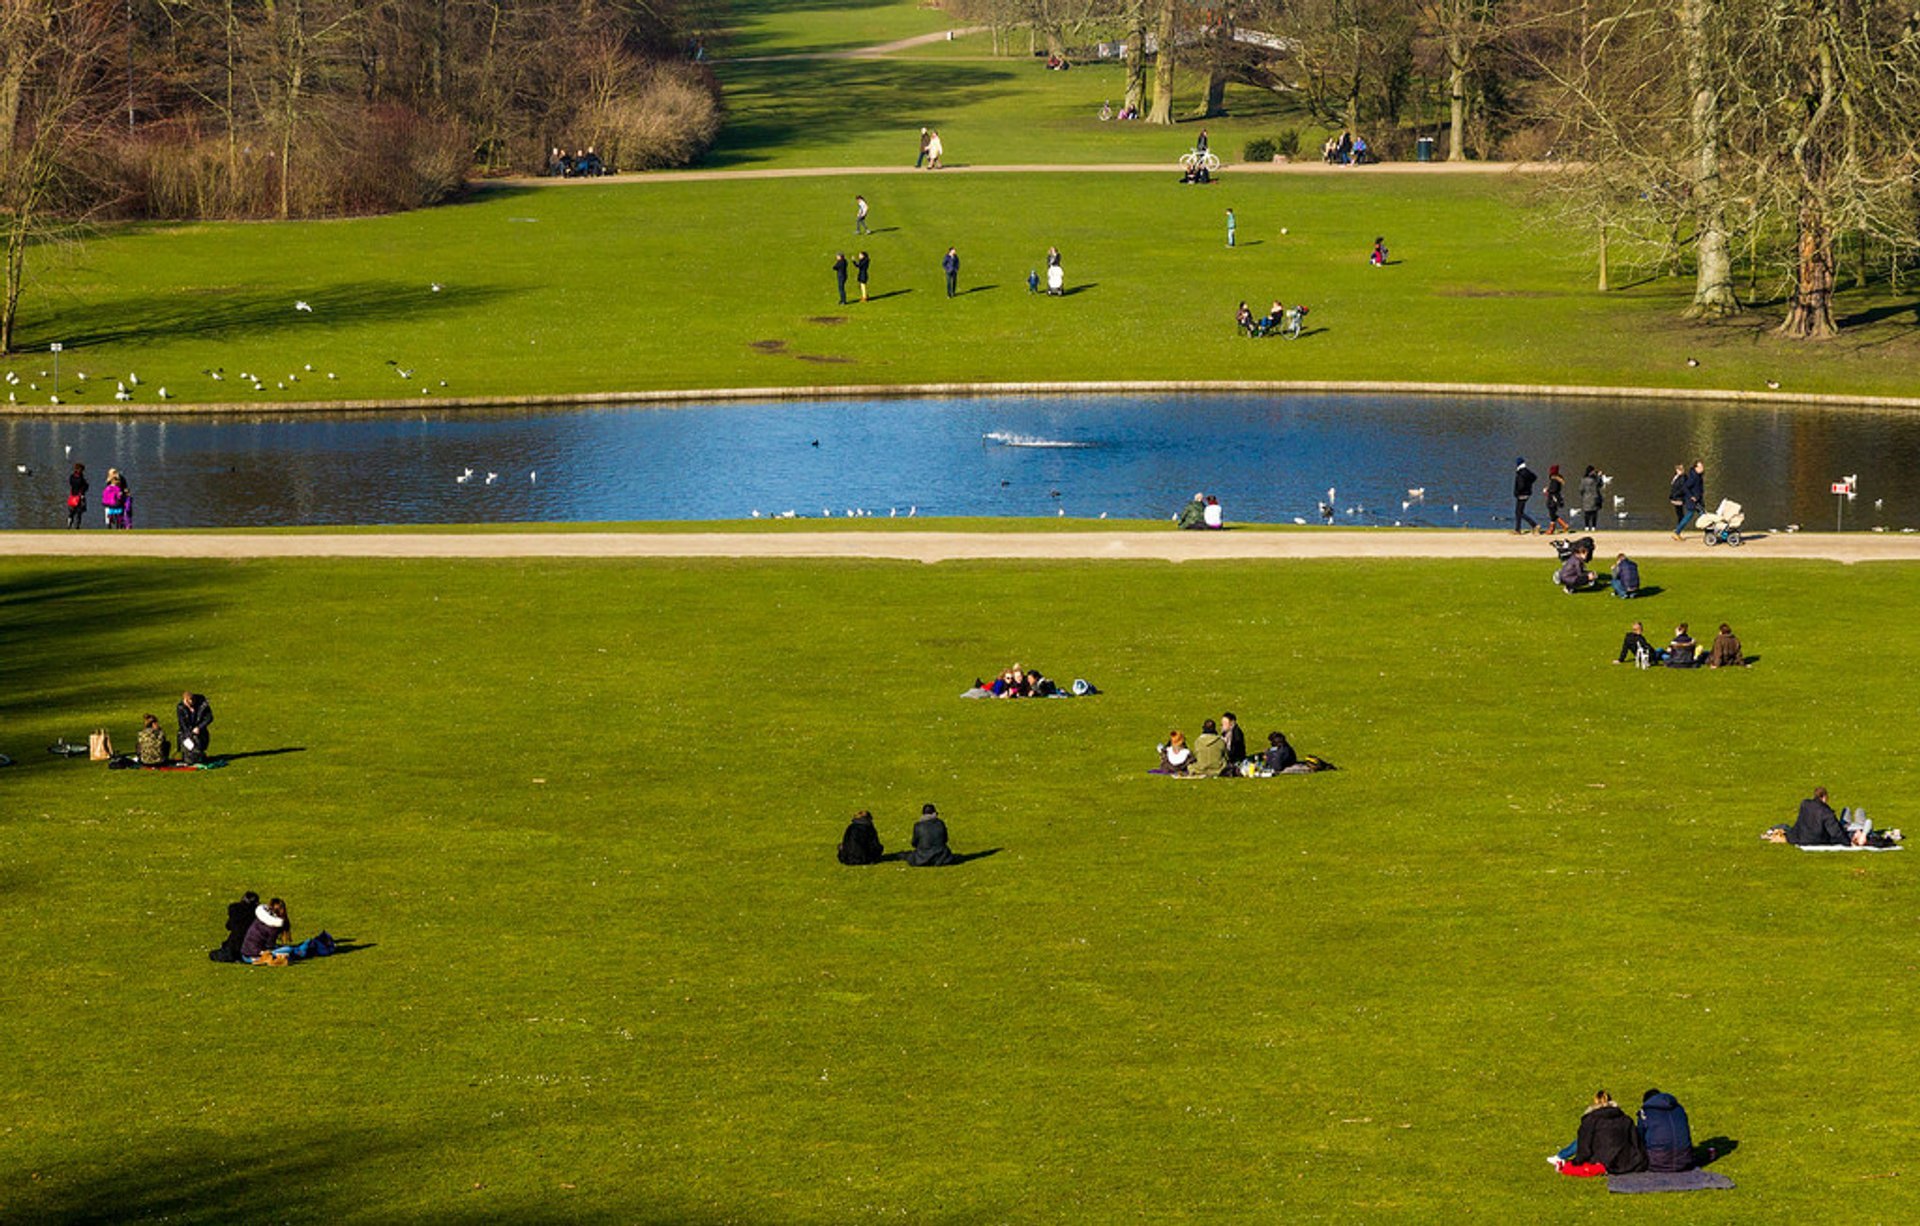 Die Parks von Kopenhagen